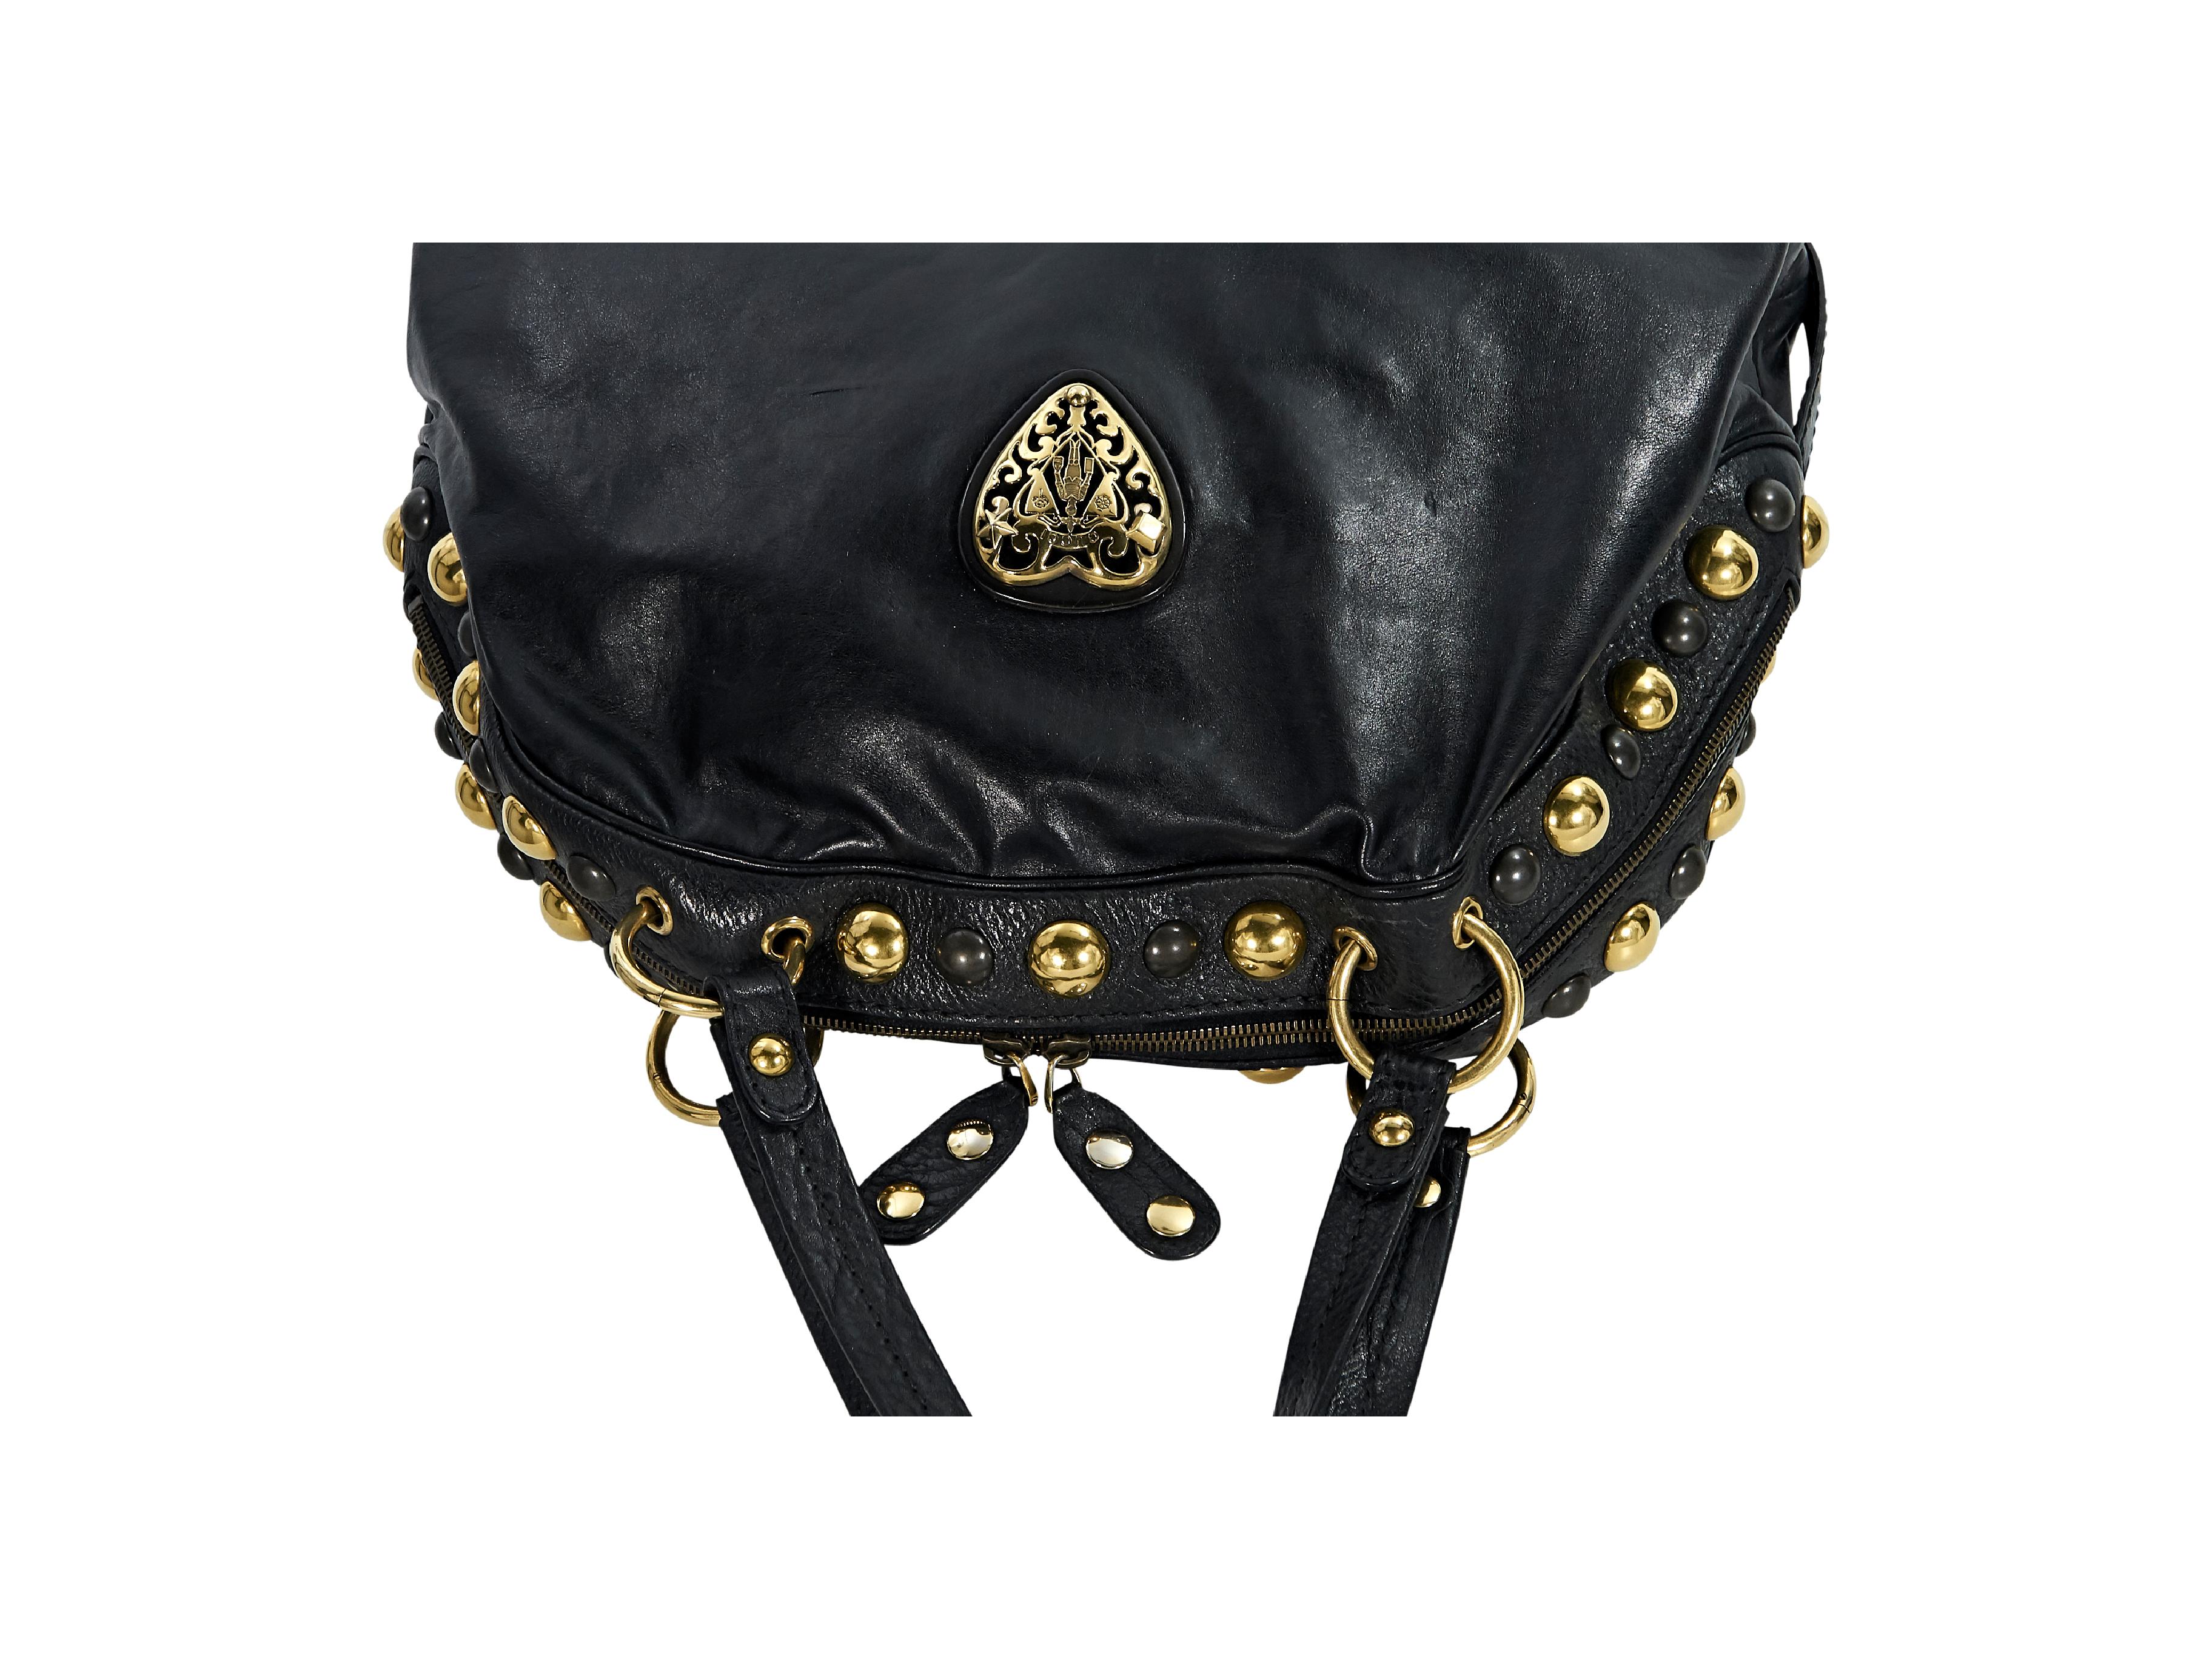 gucci studded purse